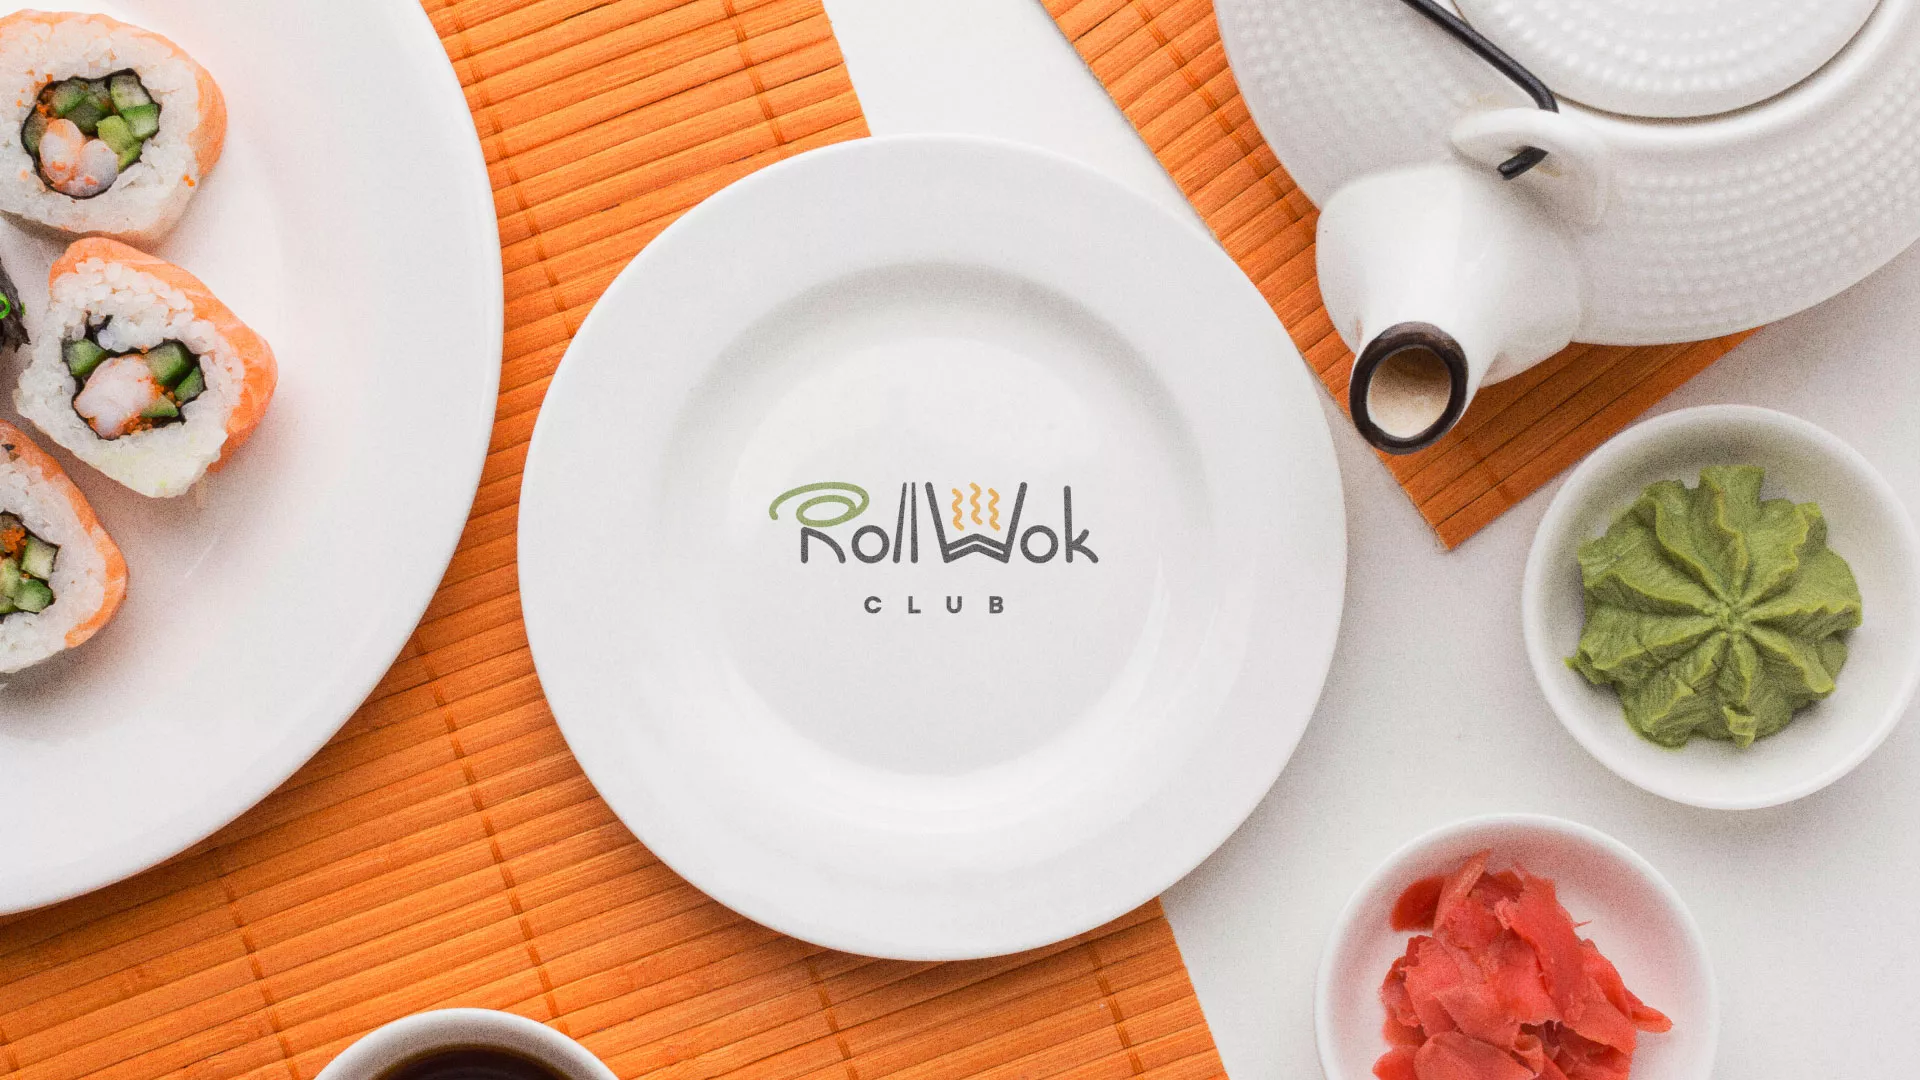 Разработка логотипа и фирменного стиля суши-бара «Roll Wok Club» в Ивангороде